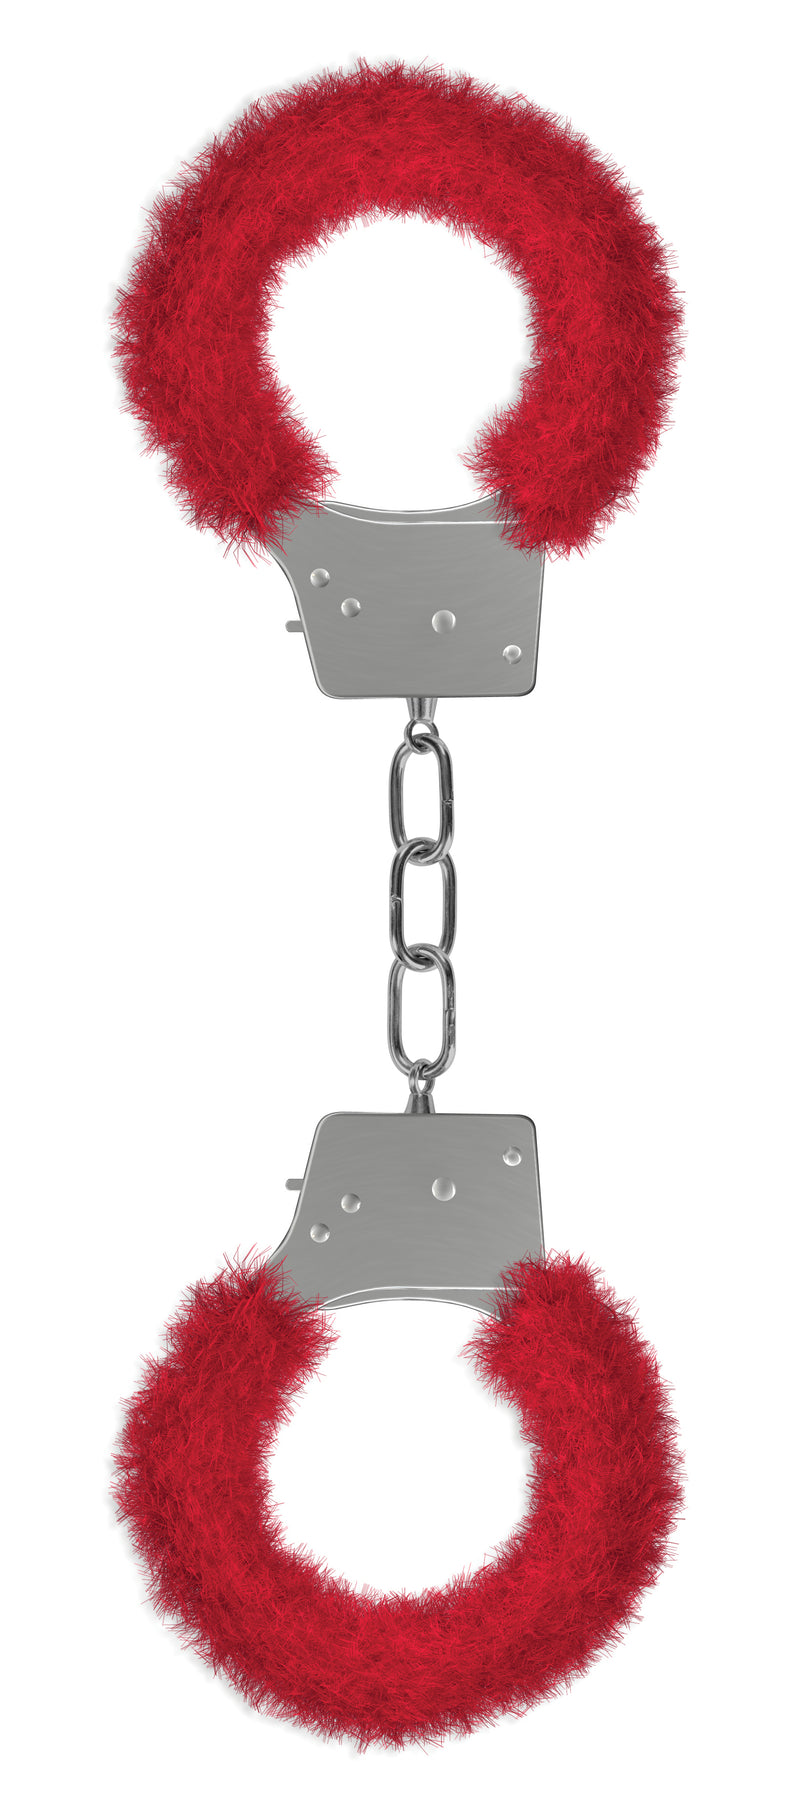 Beginner's Furry Handcuffs - Red